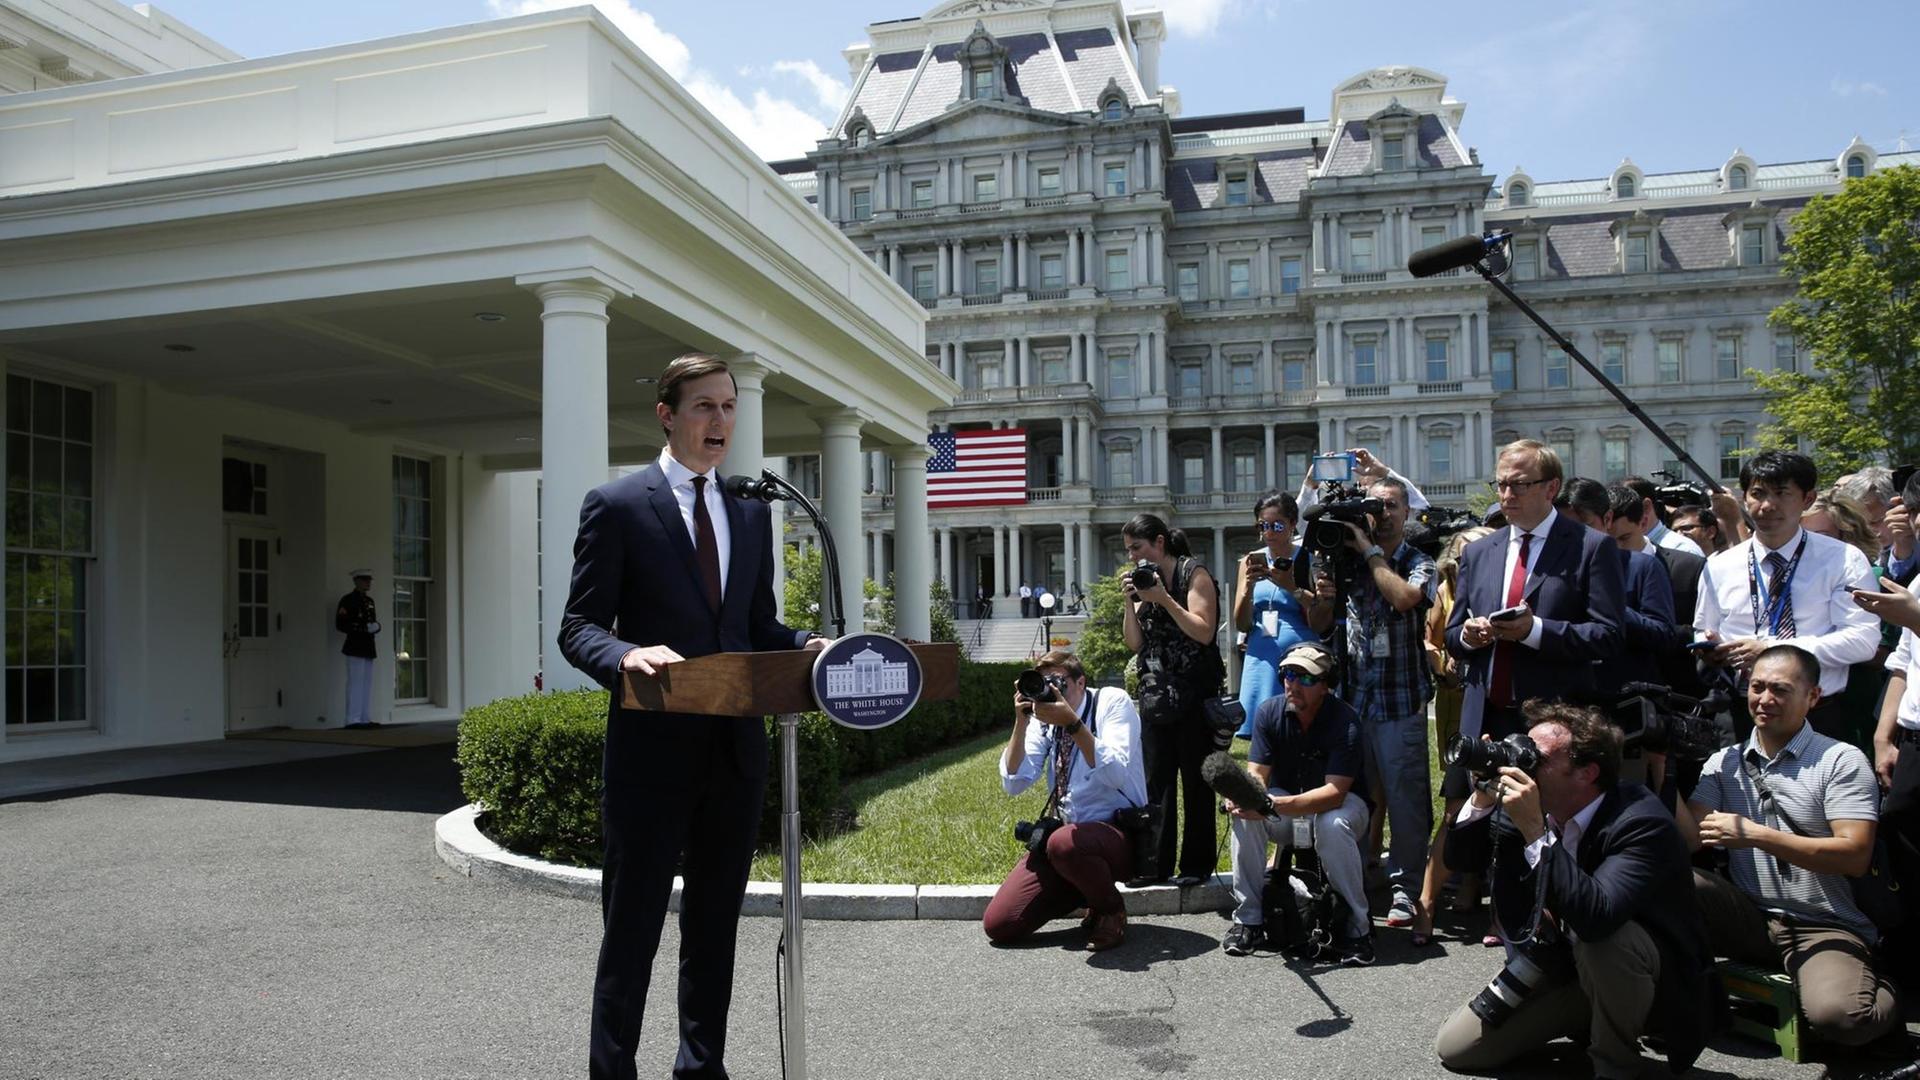 Der Schwiegersohn und Berater von US-Präsident Trump, Jared Kushner, gibt vor dem Weißen Haus in Washington ein Statement ab. Er steht hinter einem Podest mit einem Mikrofon, vor ihm stehen und sitzen Reporter und Fotografen.